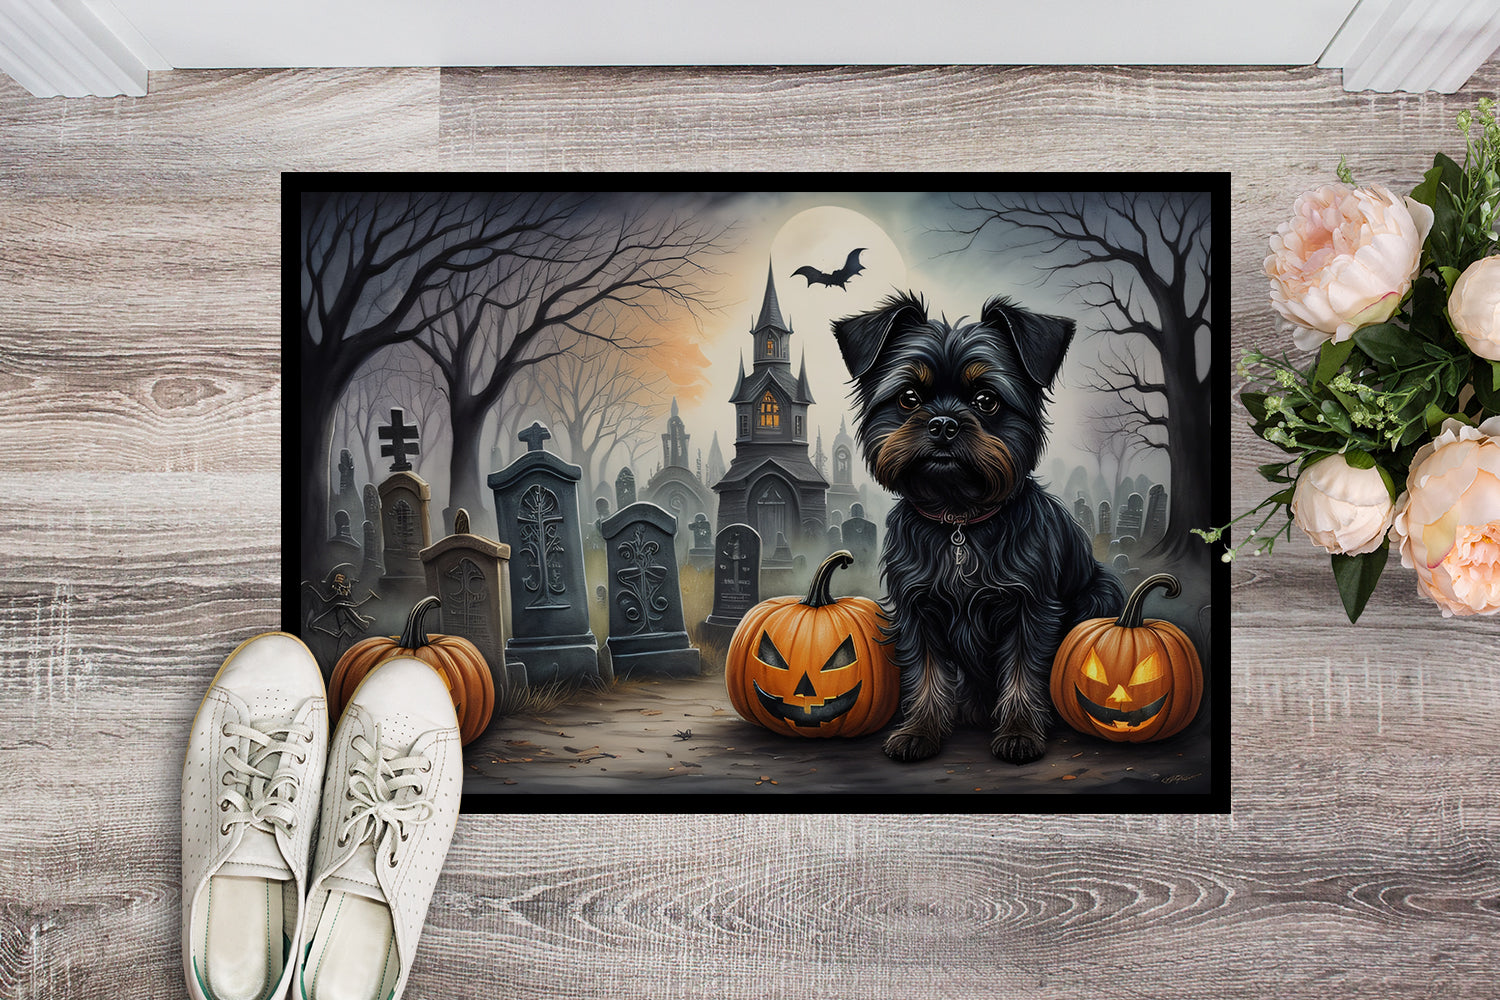 Buy this Affenpinscher Spooky Halloween Indoor or Outdoor Mat 24x36